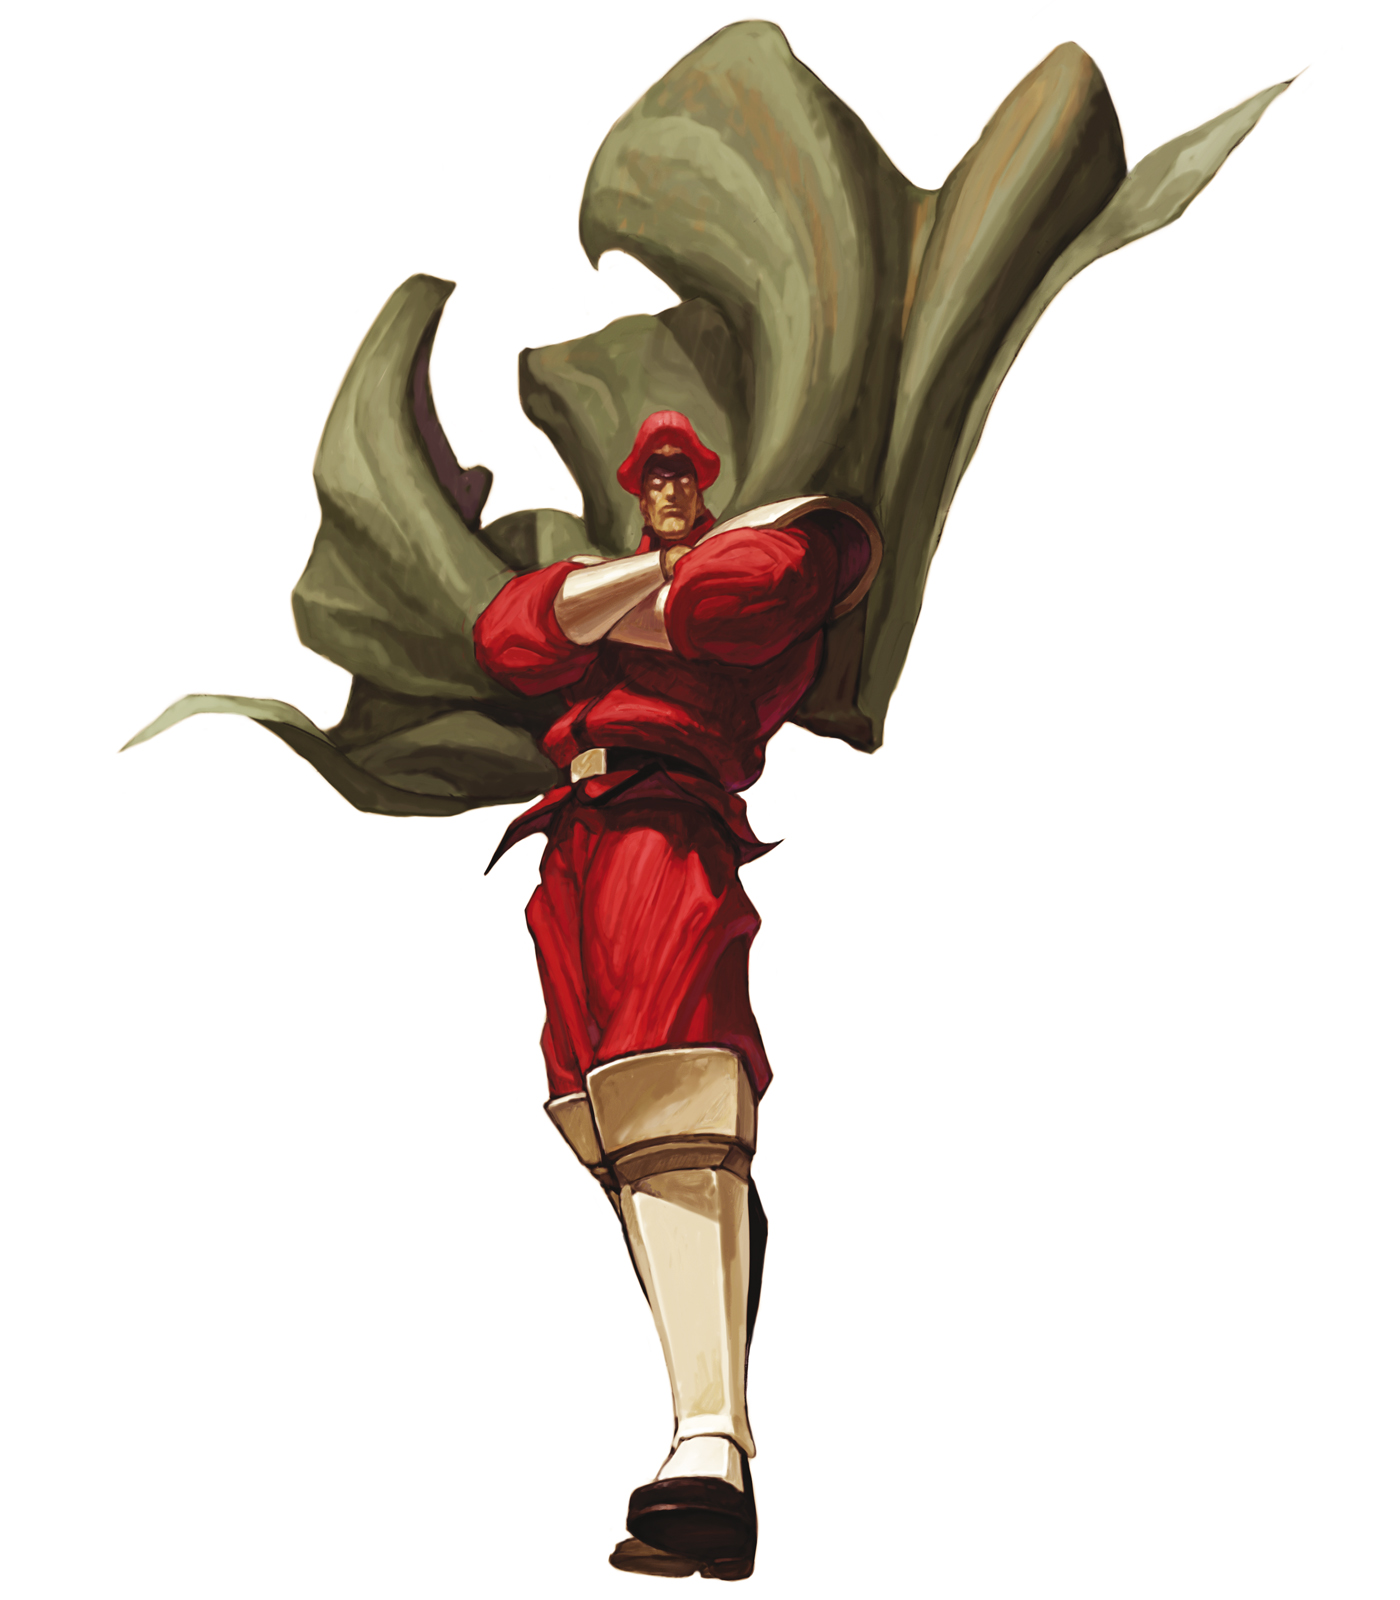 M. Bison (Street Fighter)  Street fighter characters, Super street fighter,  Street fighter art